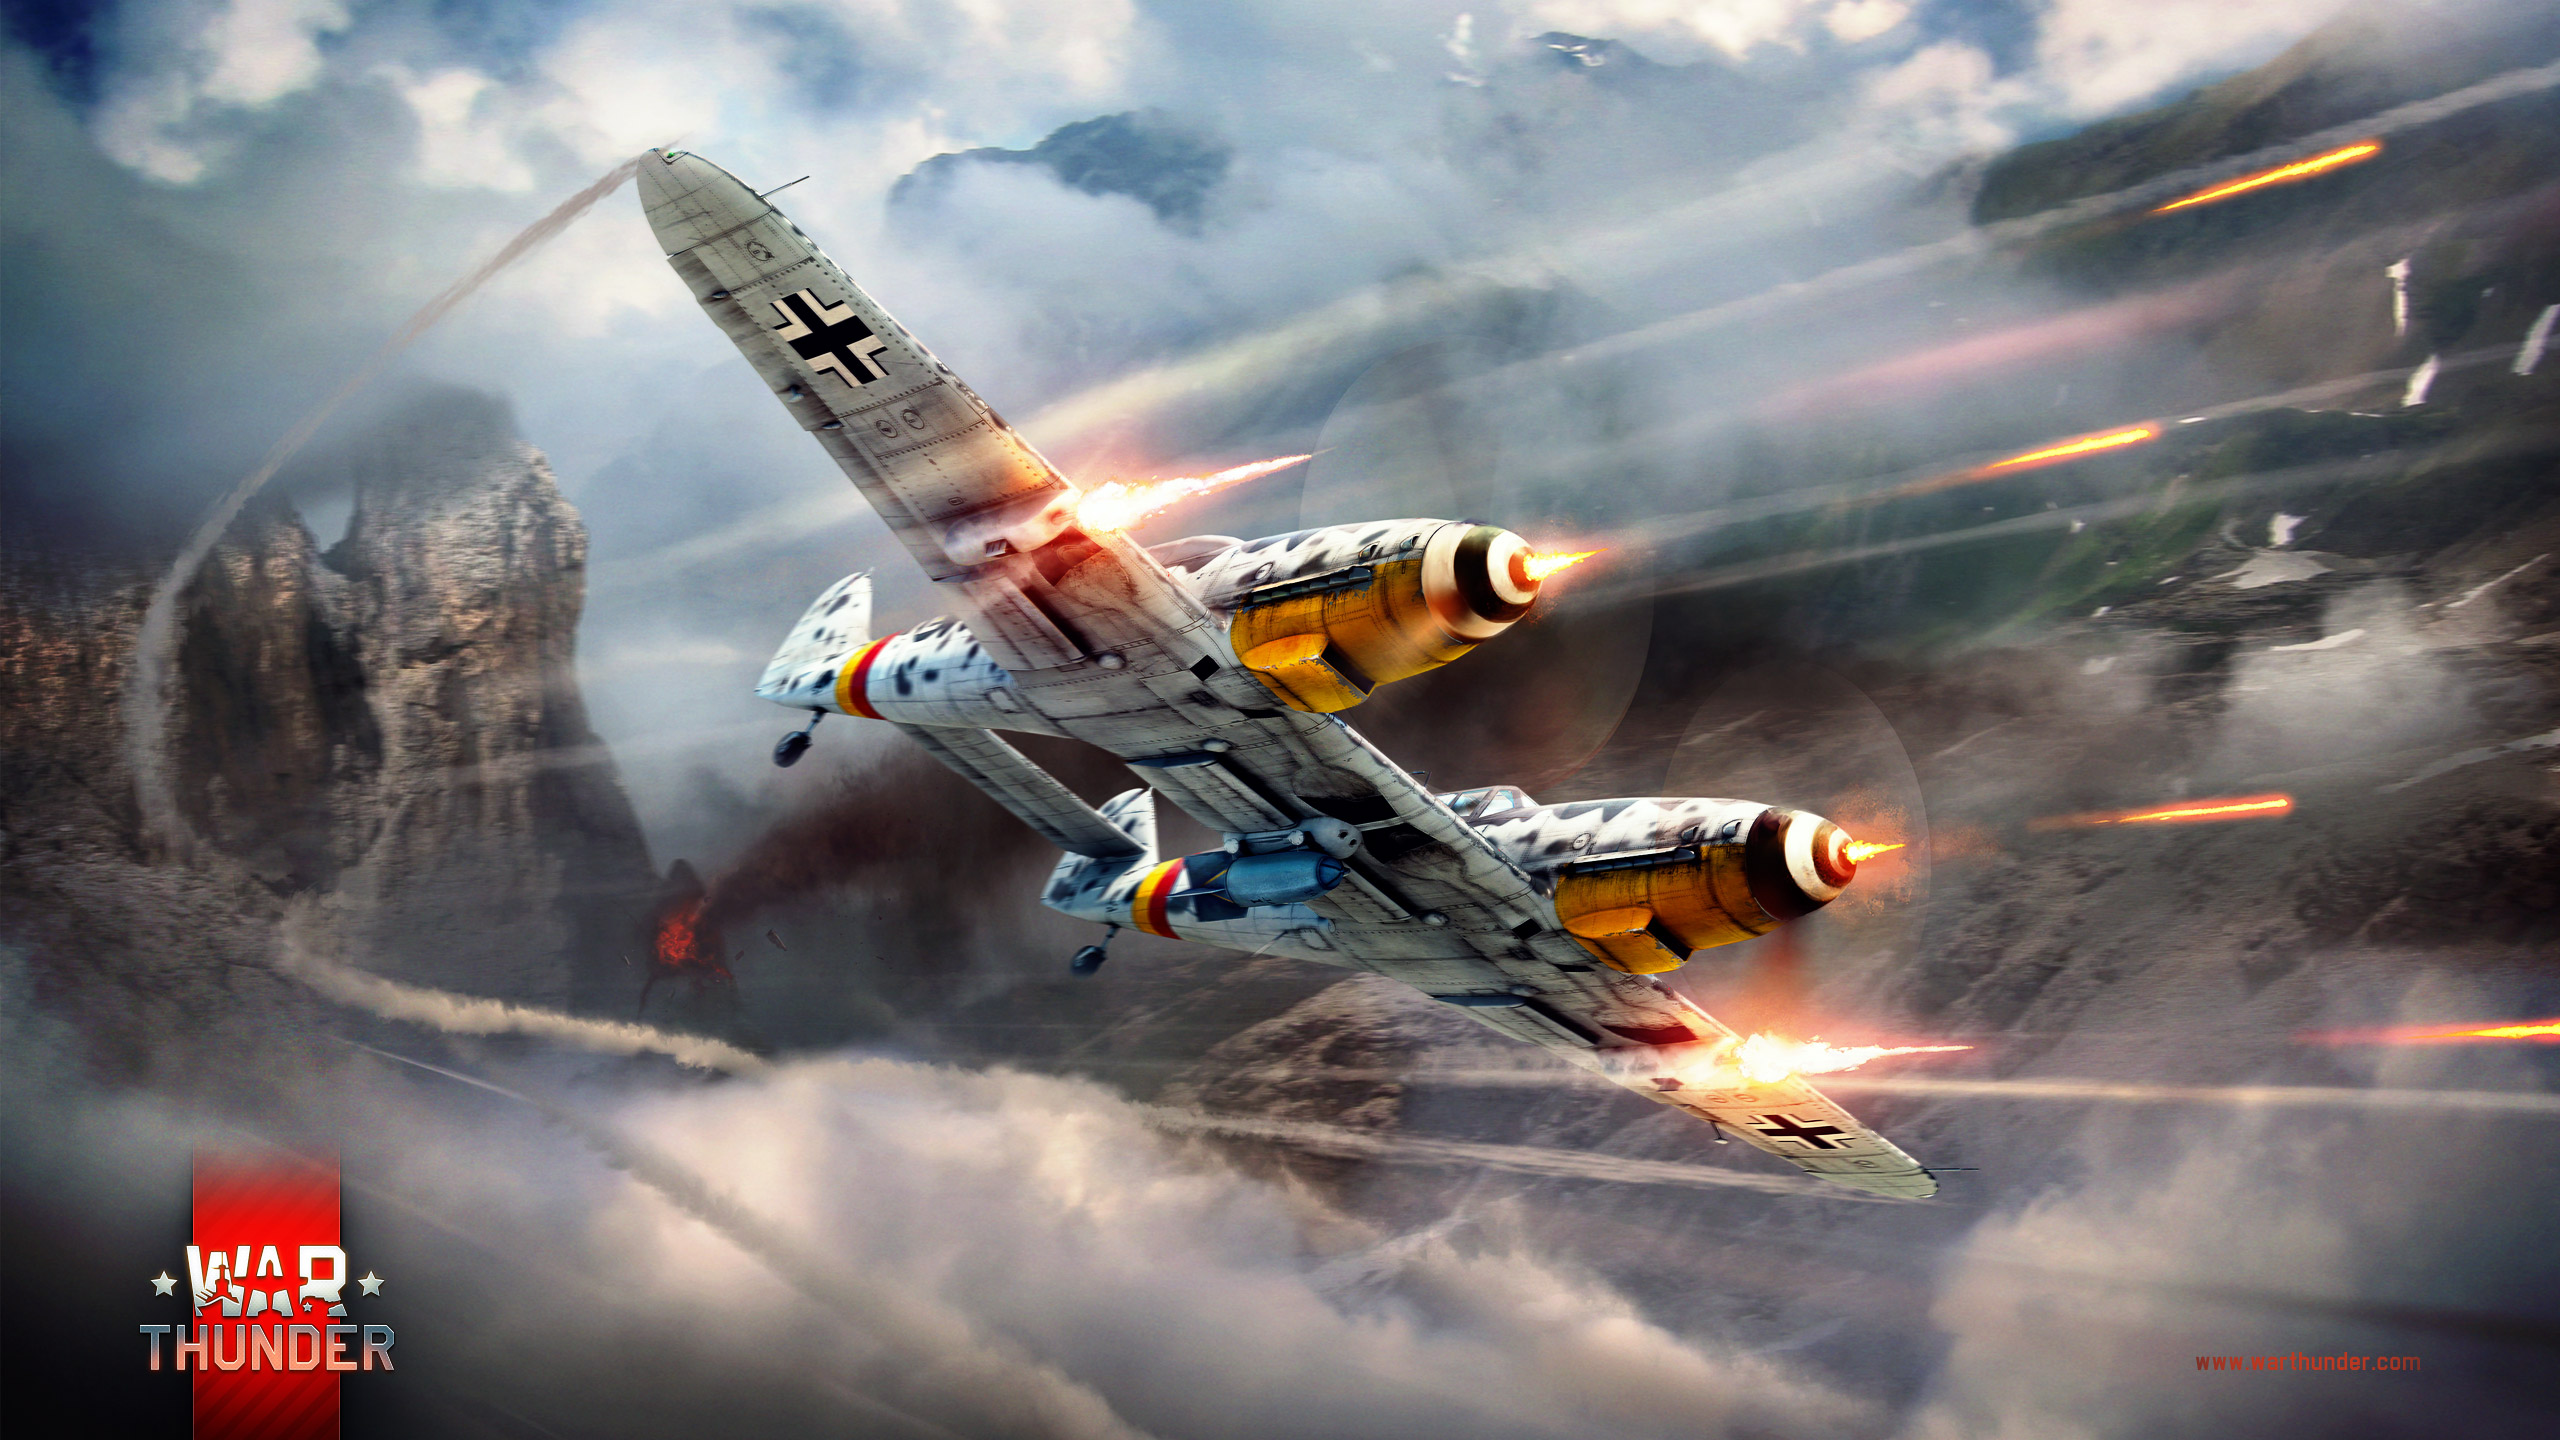 war thunder wallpaper,airplane,aircraft,vehicle,aviation,military aircraft